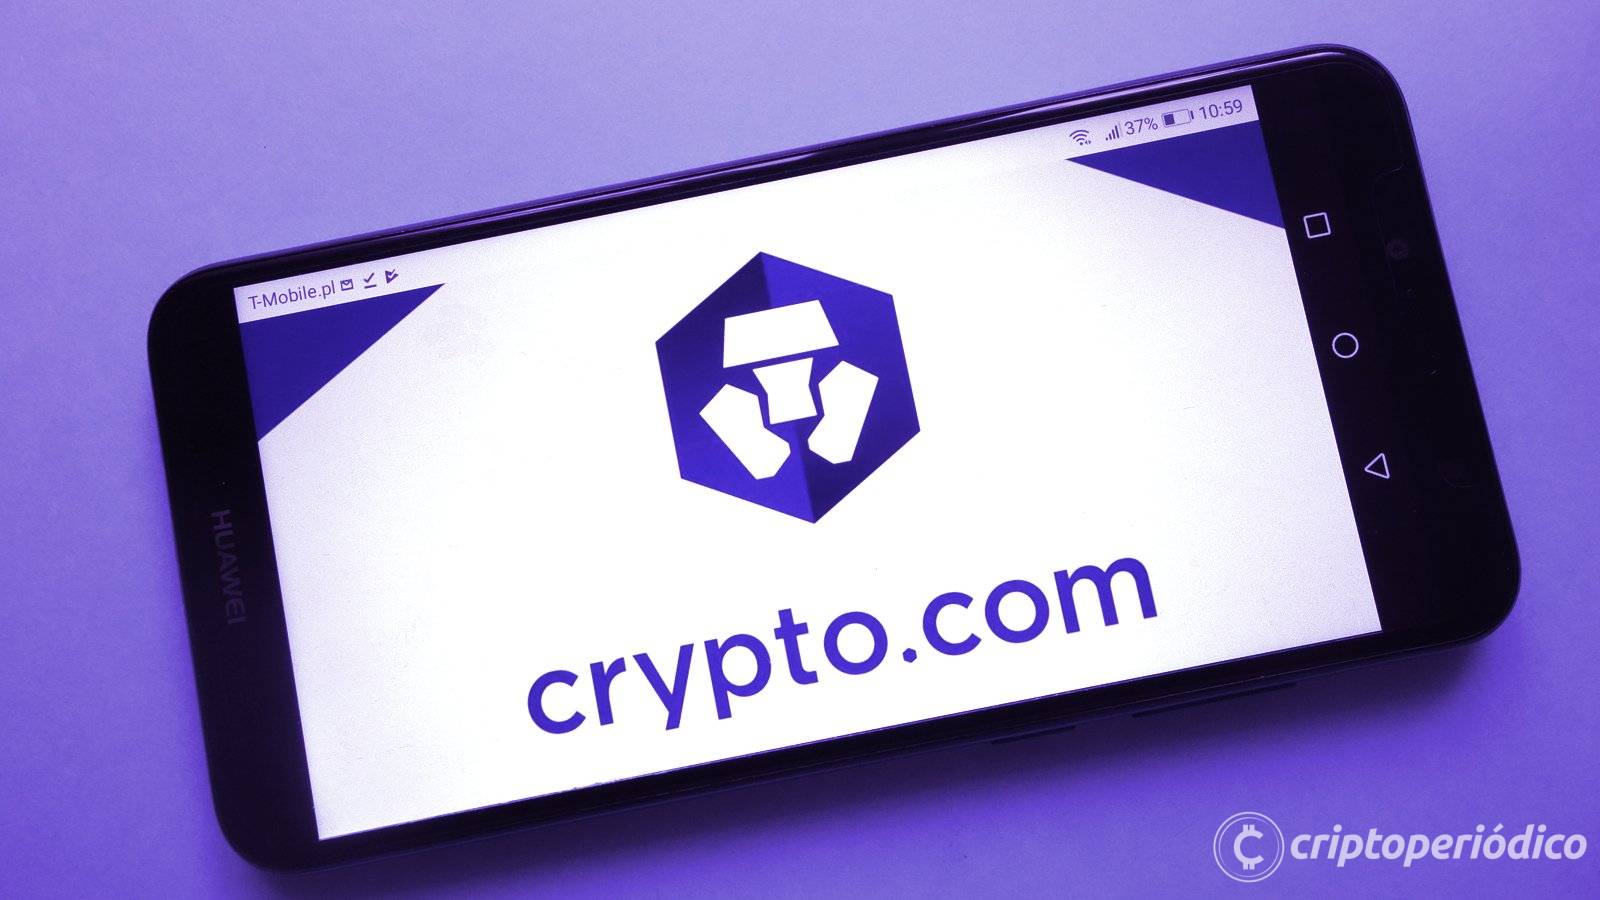 Crypto.com detendrá el servicio de intercambio institucional de EE. UU.